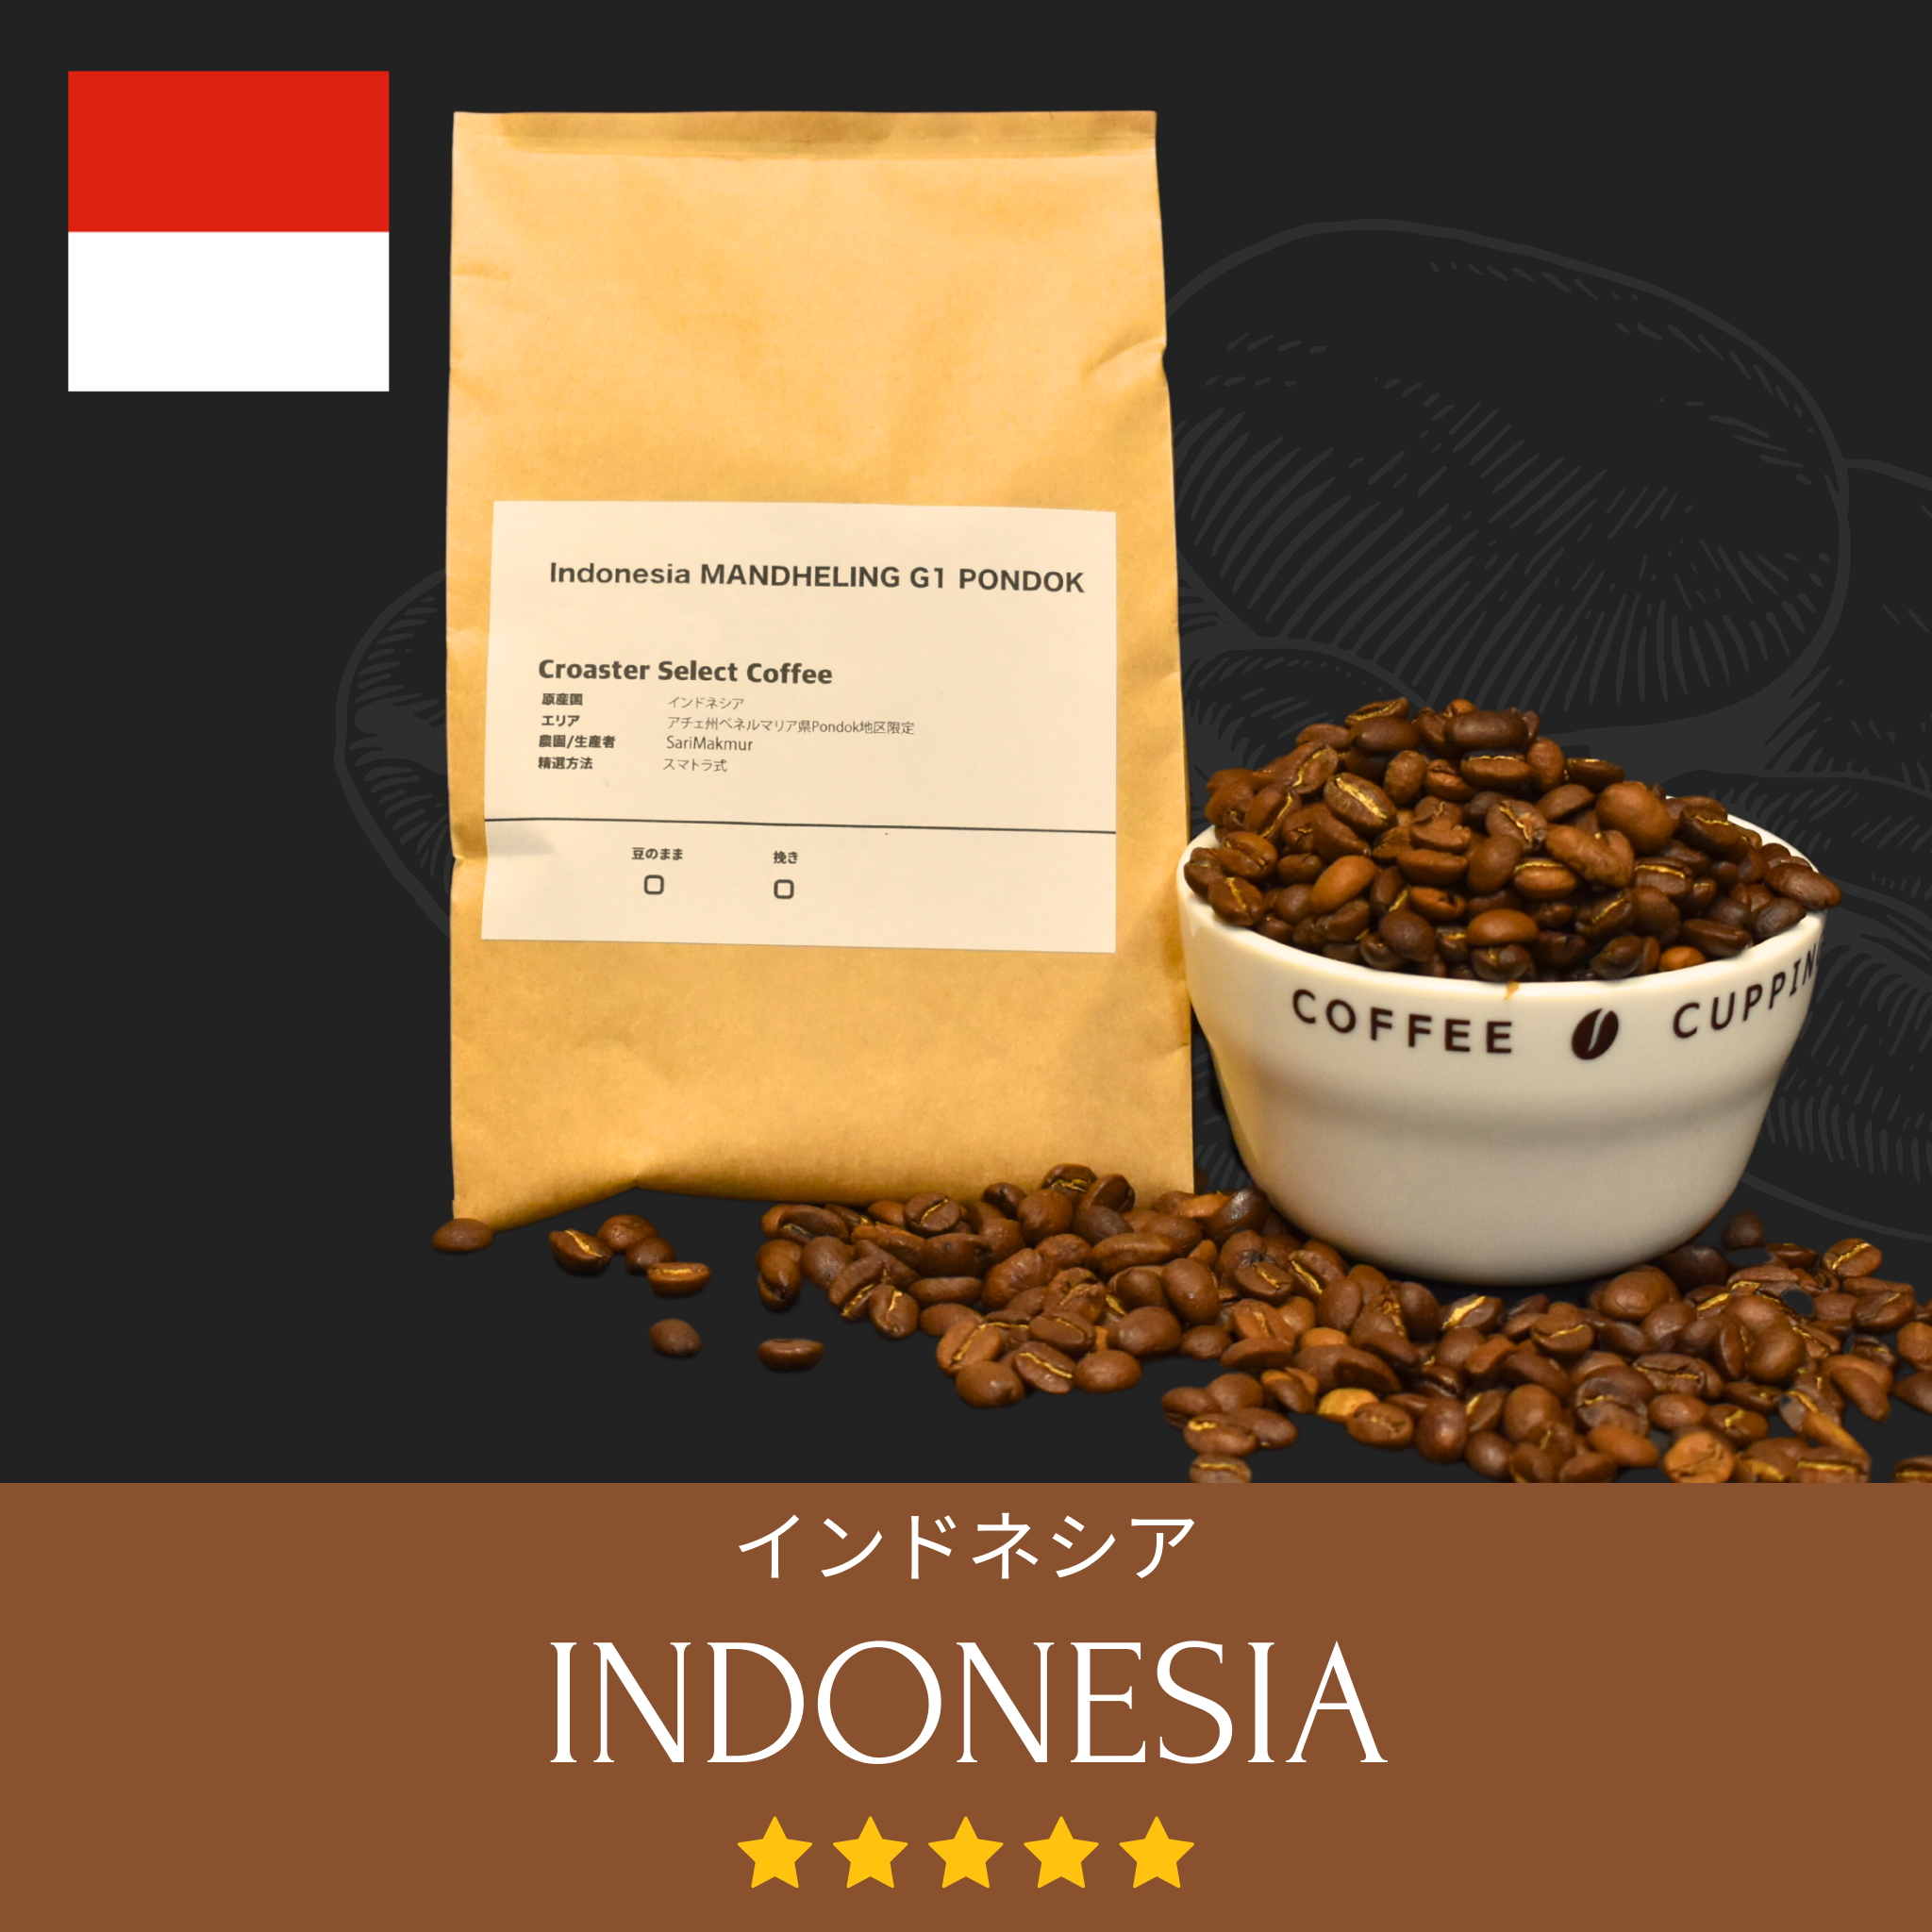 出来立て】自家焙煎コーヒー豆 極上 マンデリンG1 350g マンデリン100%ストレート 深煎り インドネシア原産 【G1ランク】最高品位 - 飲料